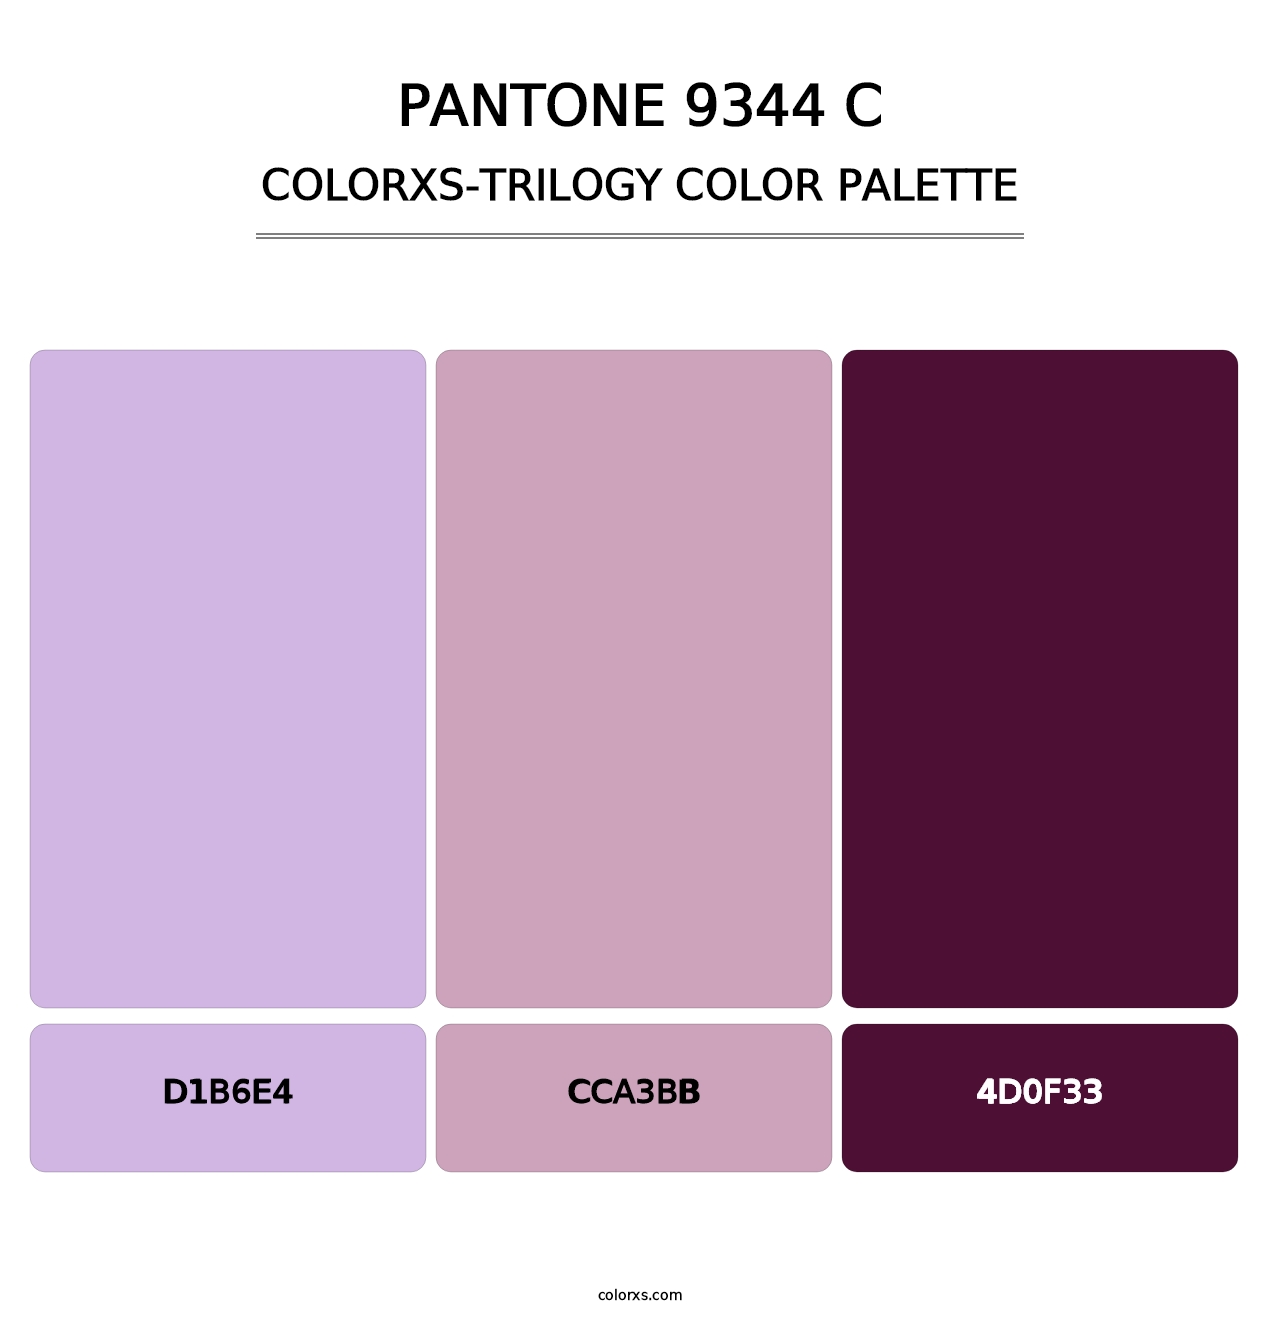 PANTONE 9344 C - Colorxs Trilogy Palette